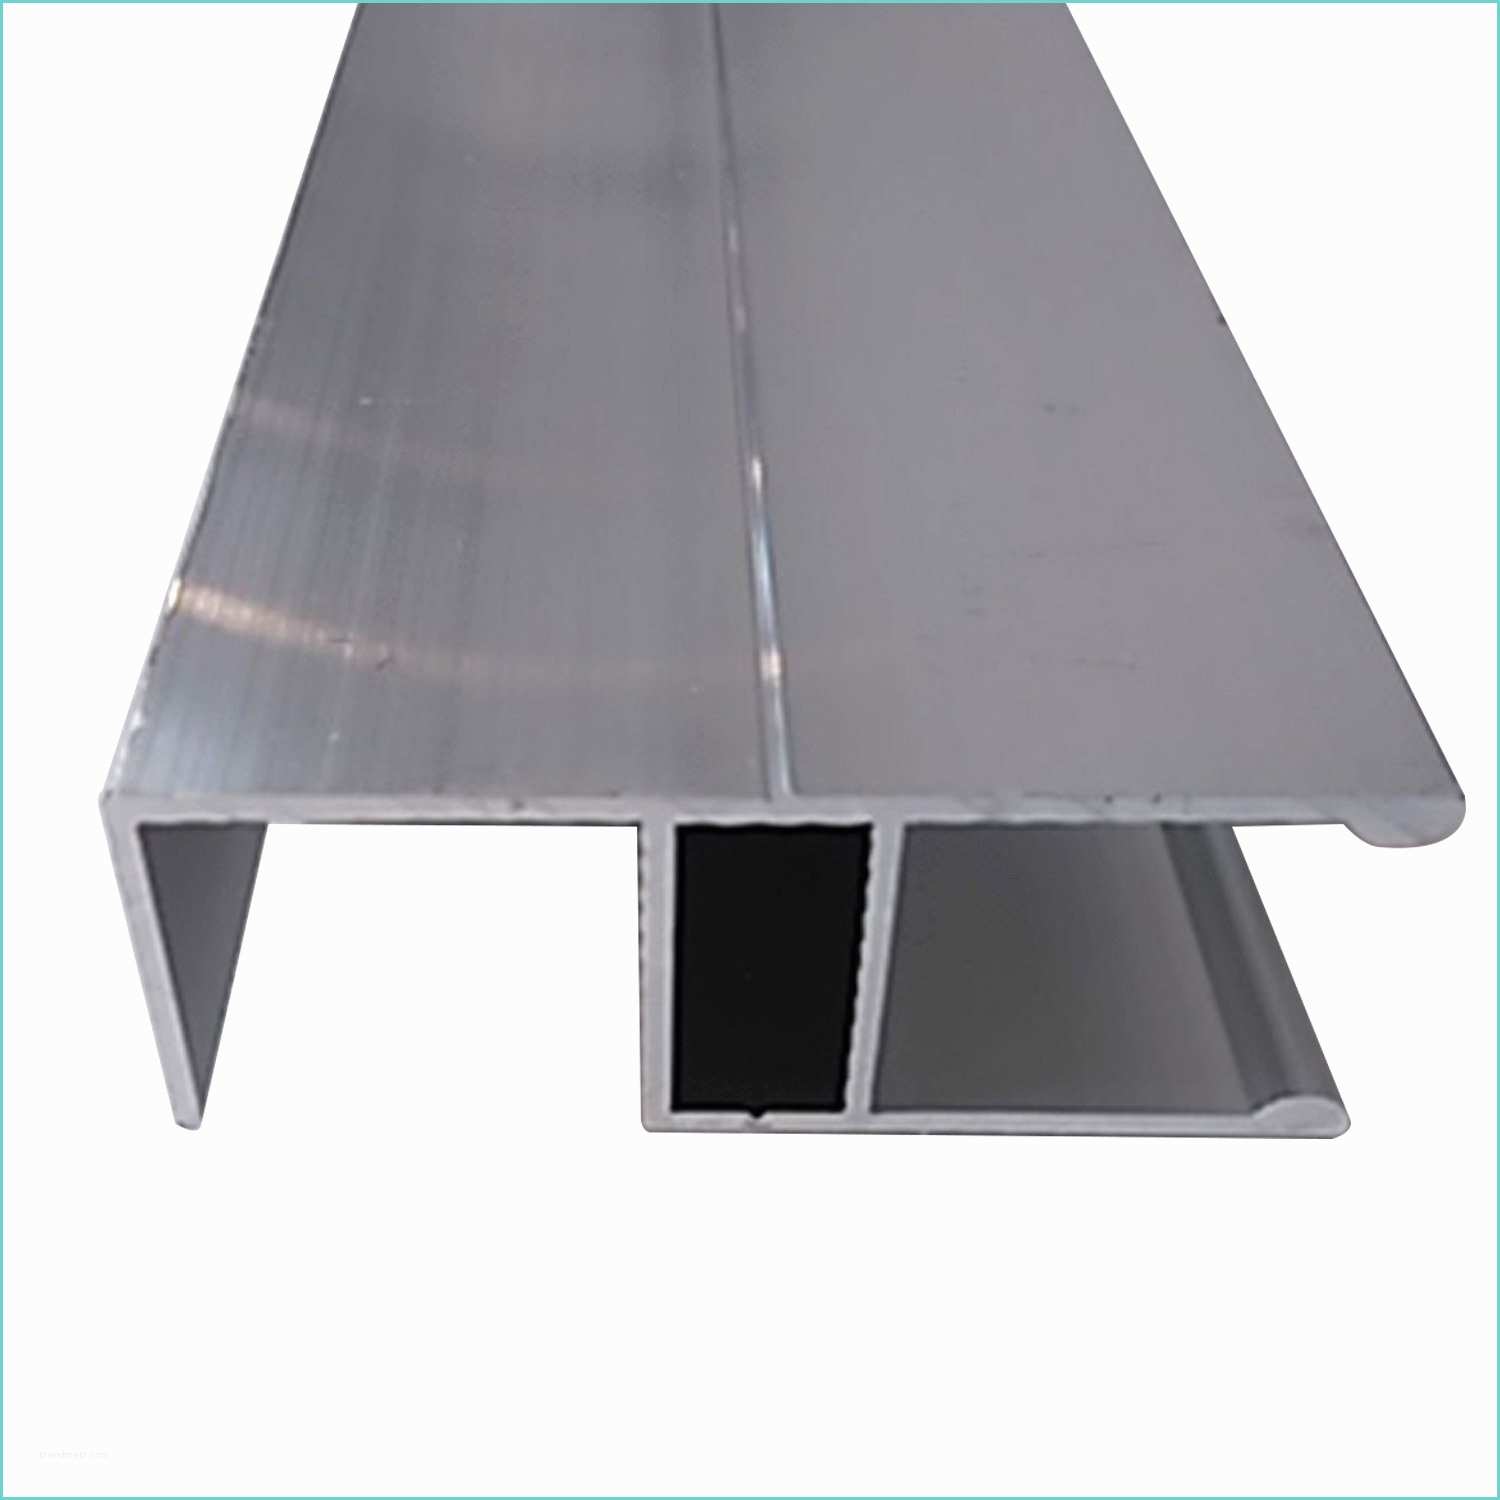 Profil Aluminium Pour Plaque Polycarbonate Leroy Merlin Profil Bordure Pour Plaque Ep 16 Mm Aluminium L 3 M